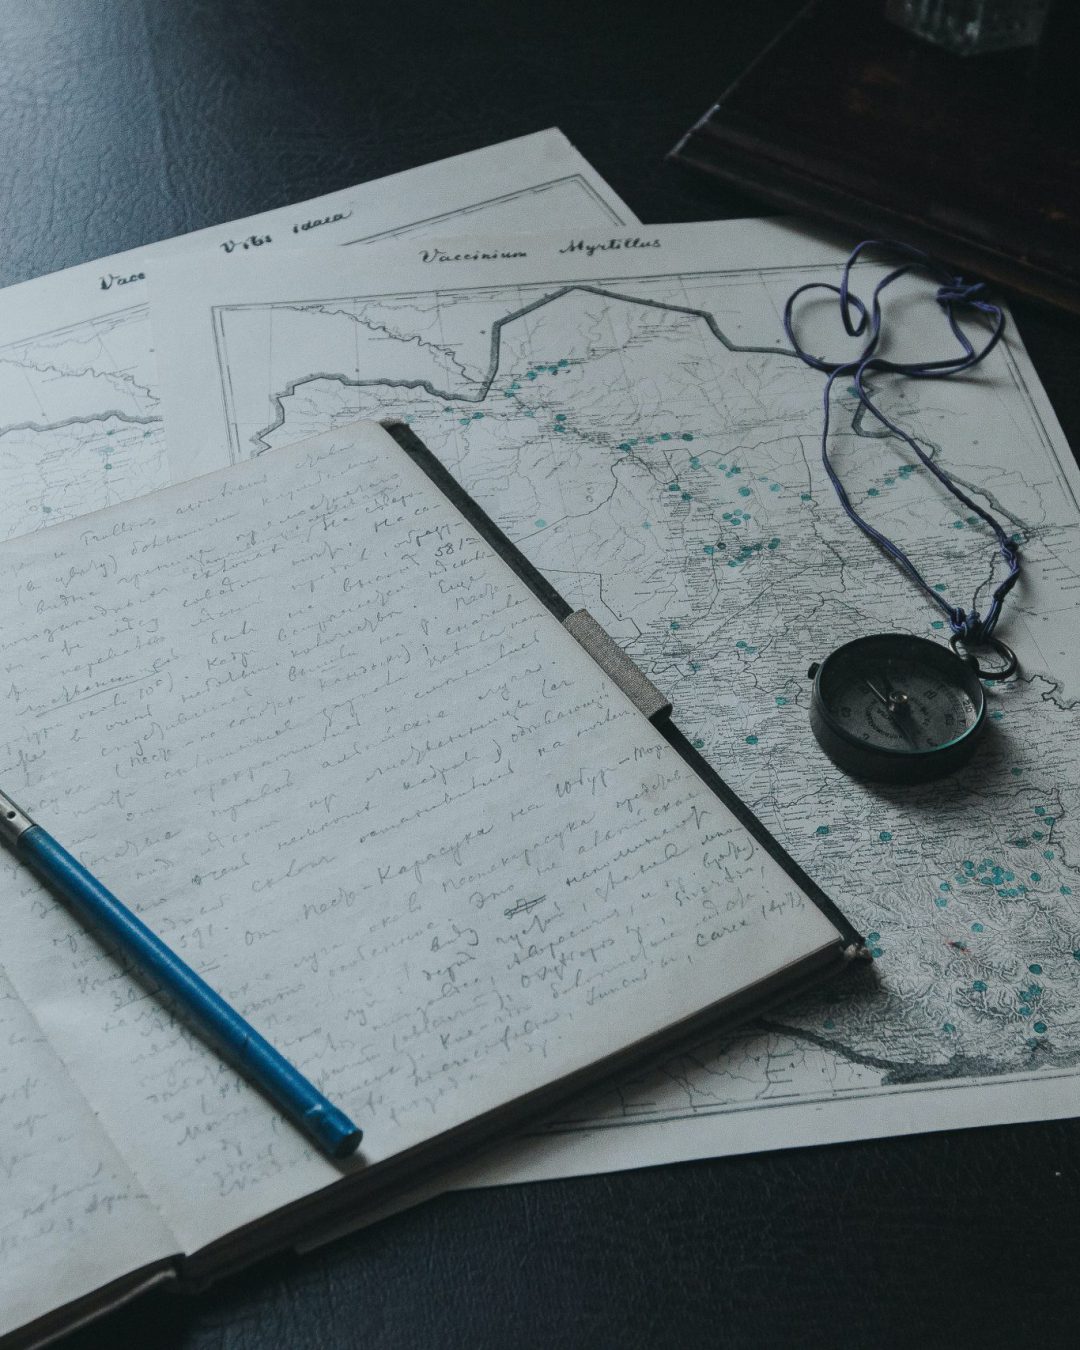 Caneta-tinteiro, caderno manuscrito e bússola sobre um mapa